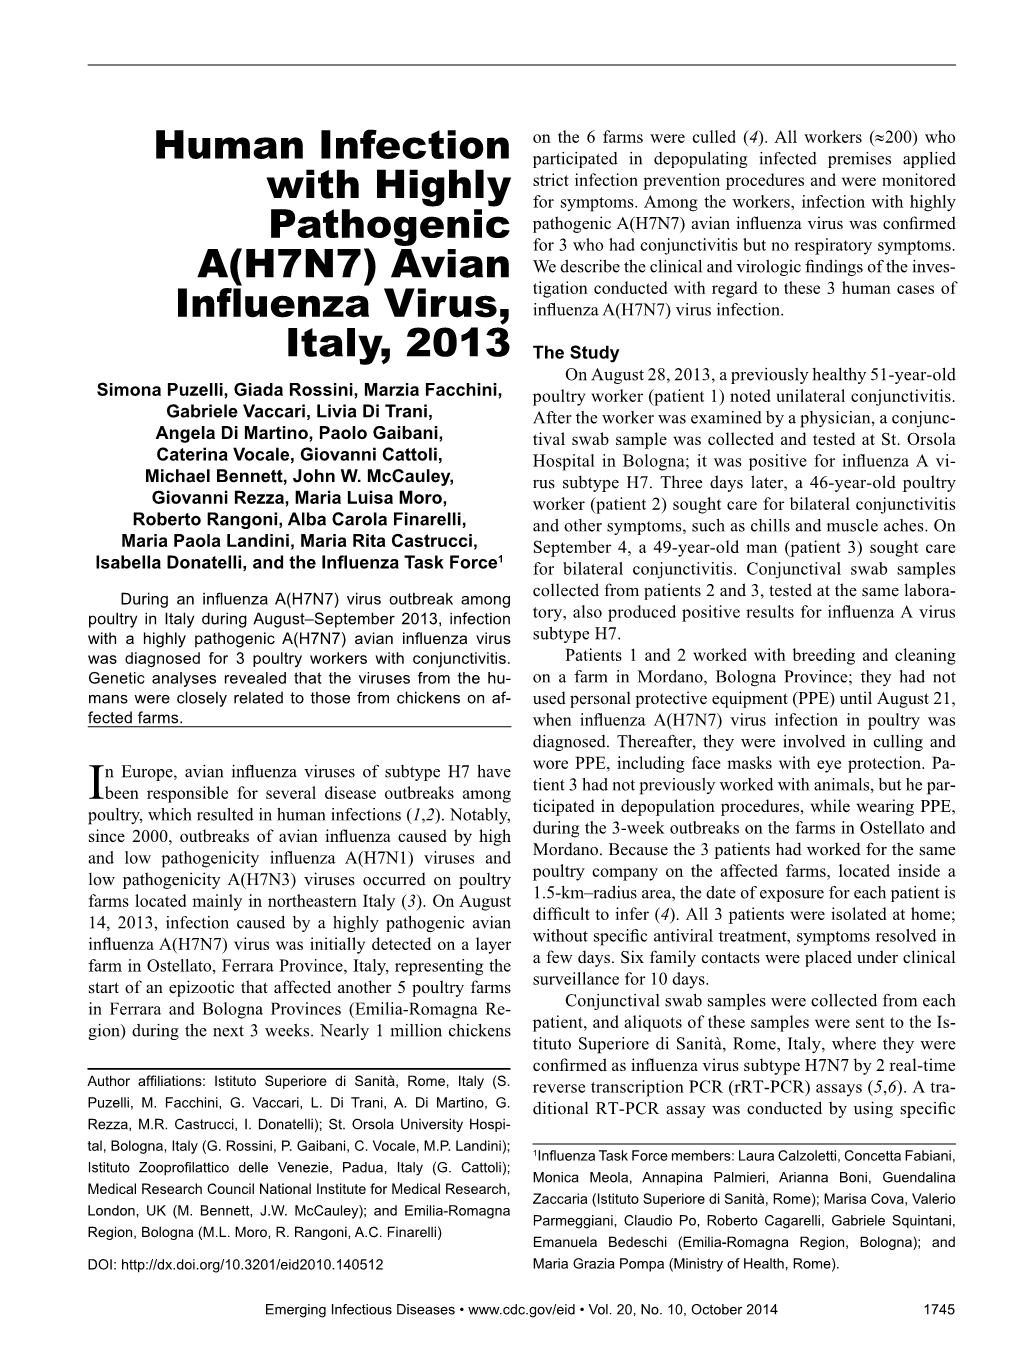 Avian Influenza Virus, Italy, 2013